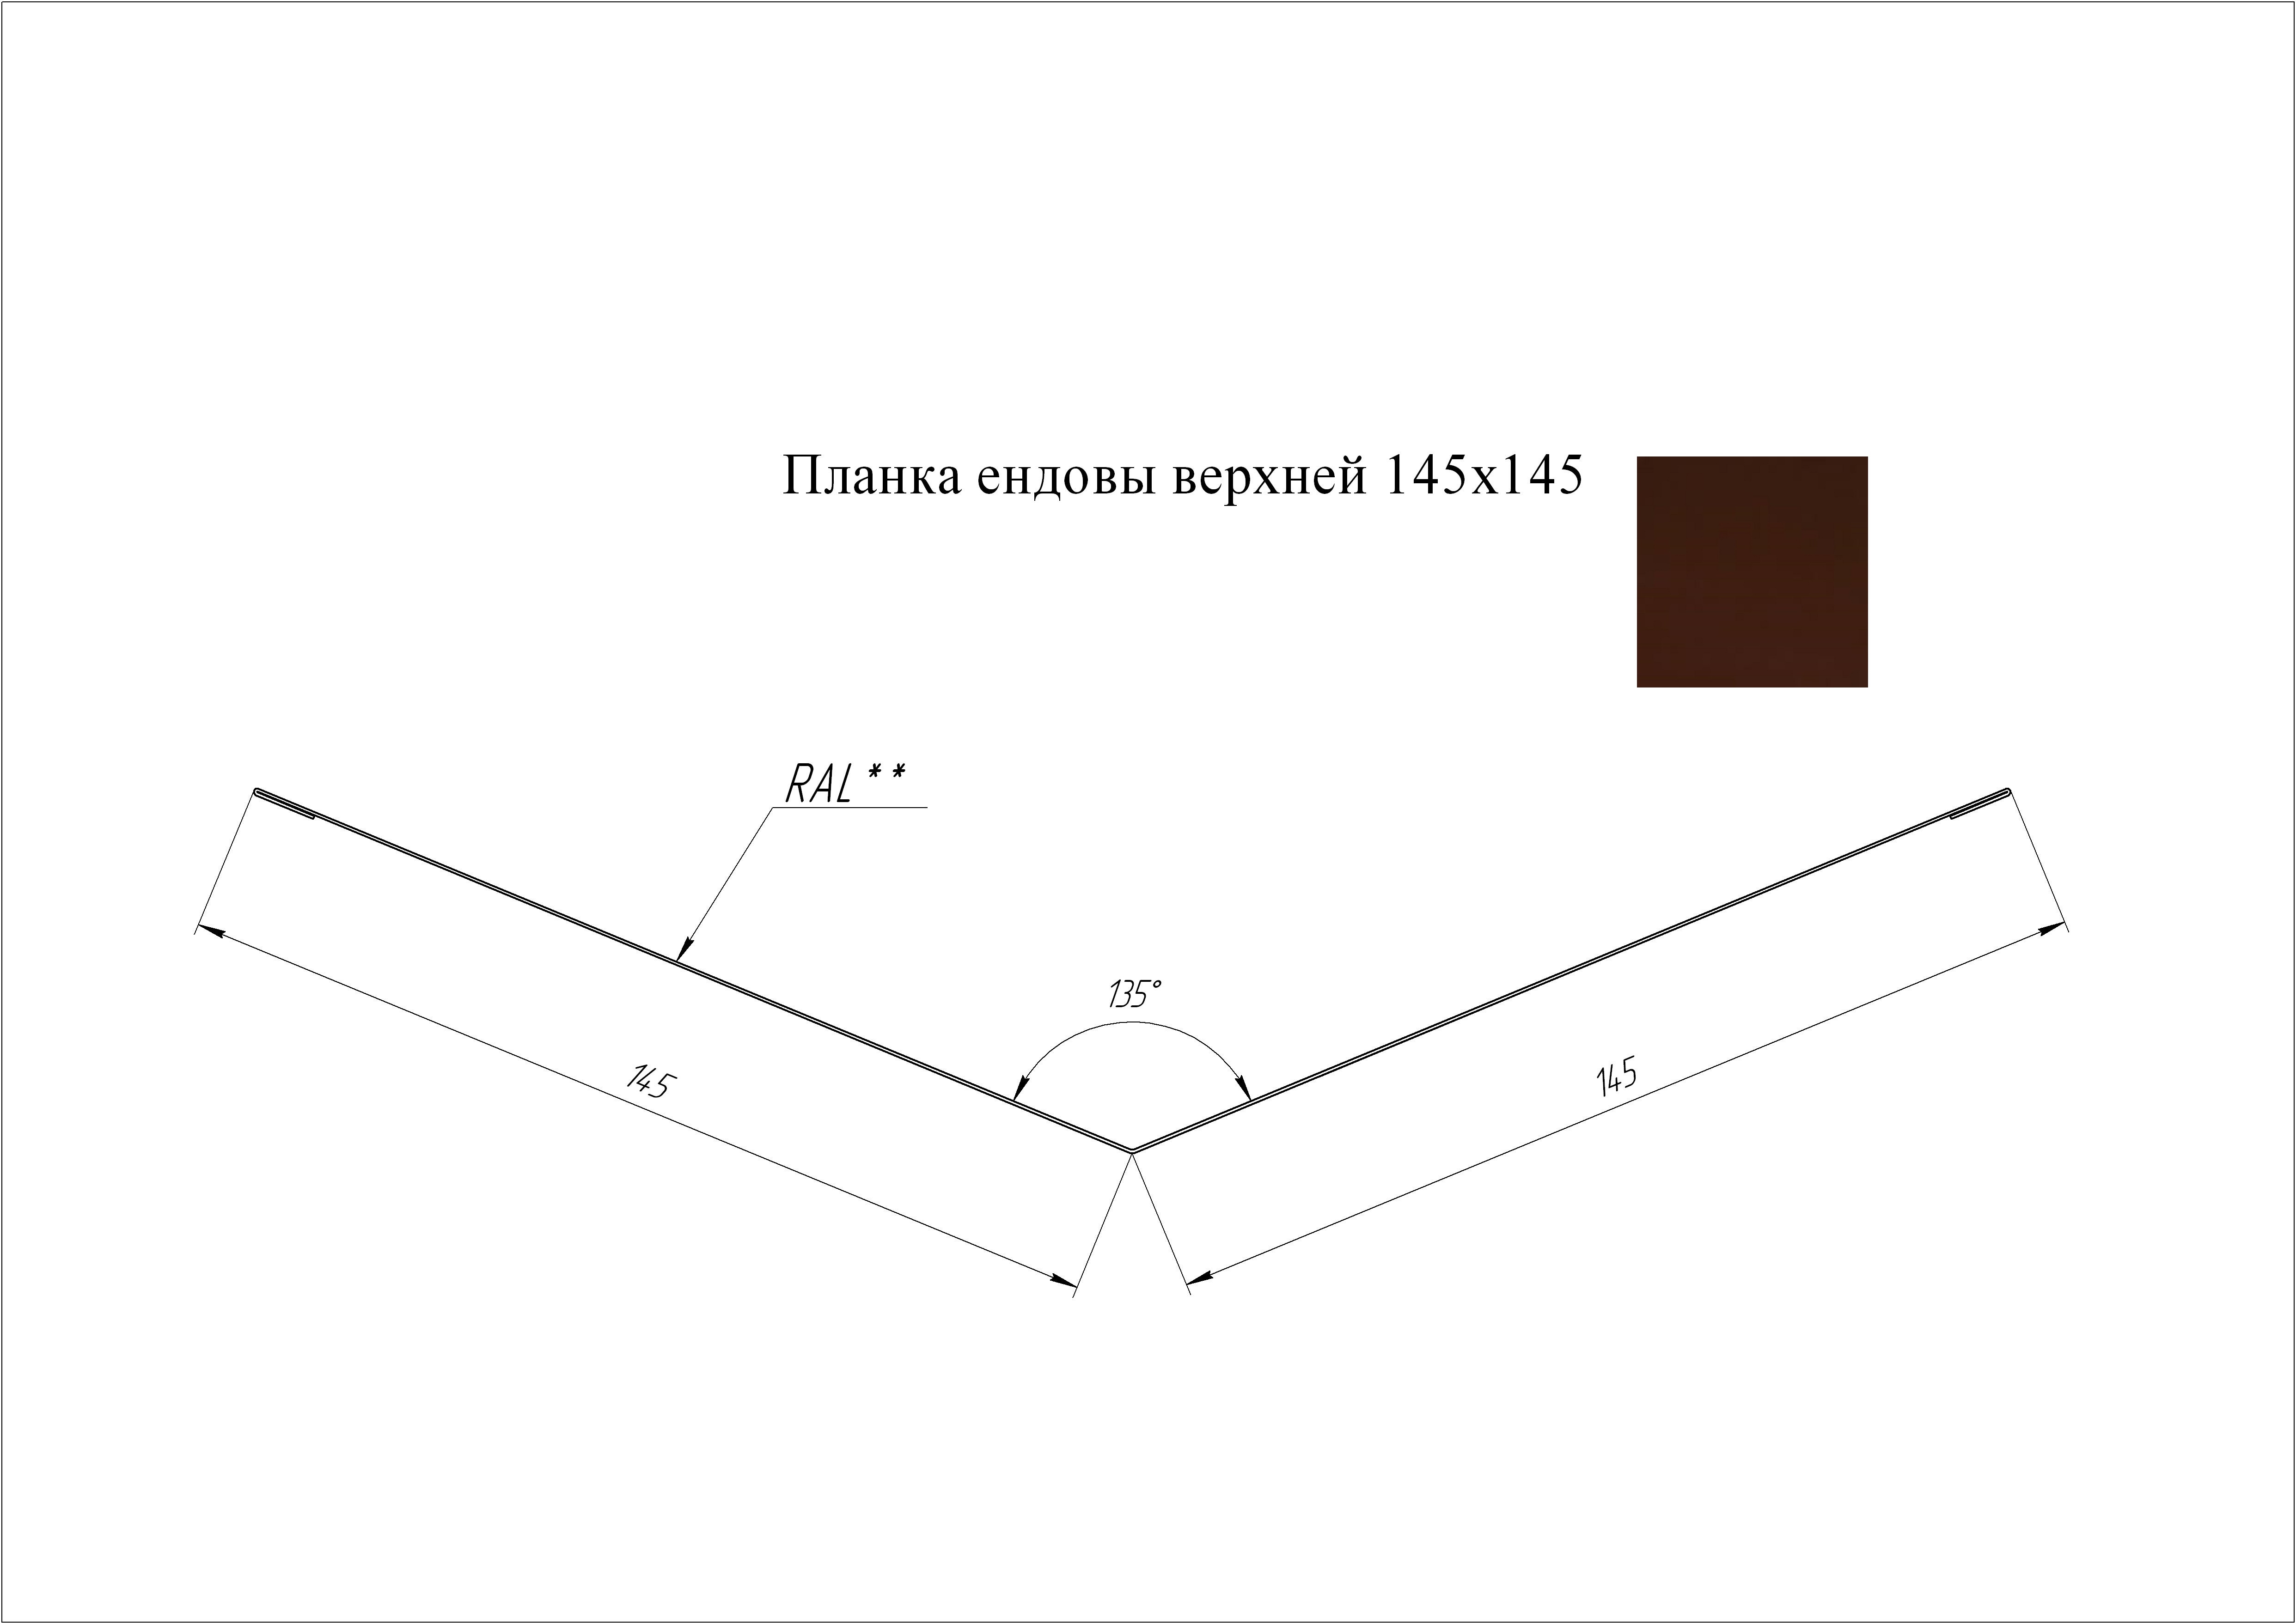 Ендова верхняя 145*145 мм L=2 м GL Atlas RAL 8017 - коричневый шоколад